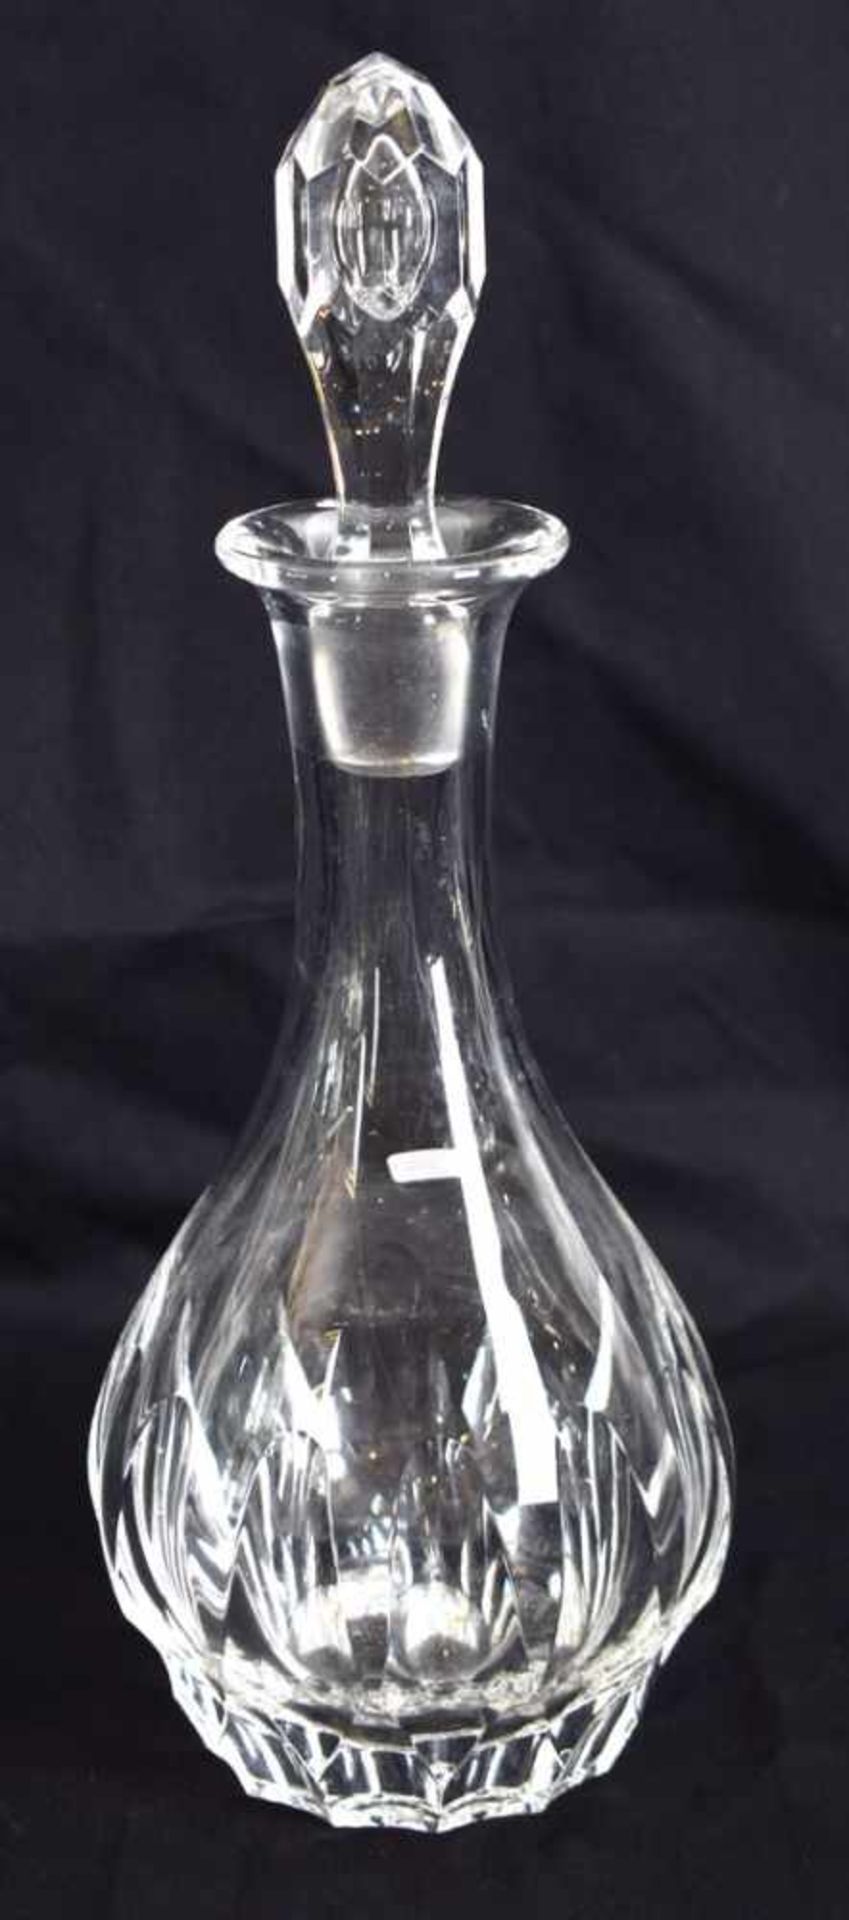 Karaffe farbl. Glas, geschliffen, leicht gebaucht, H mit Stöpsel 33 cm